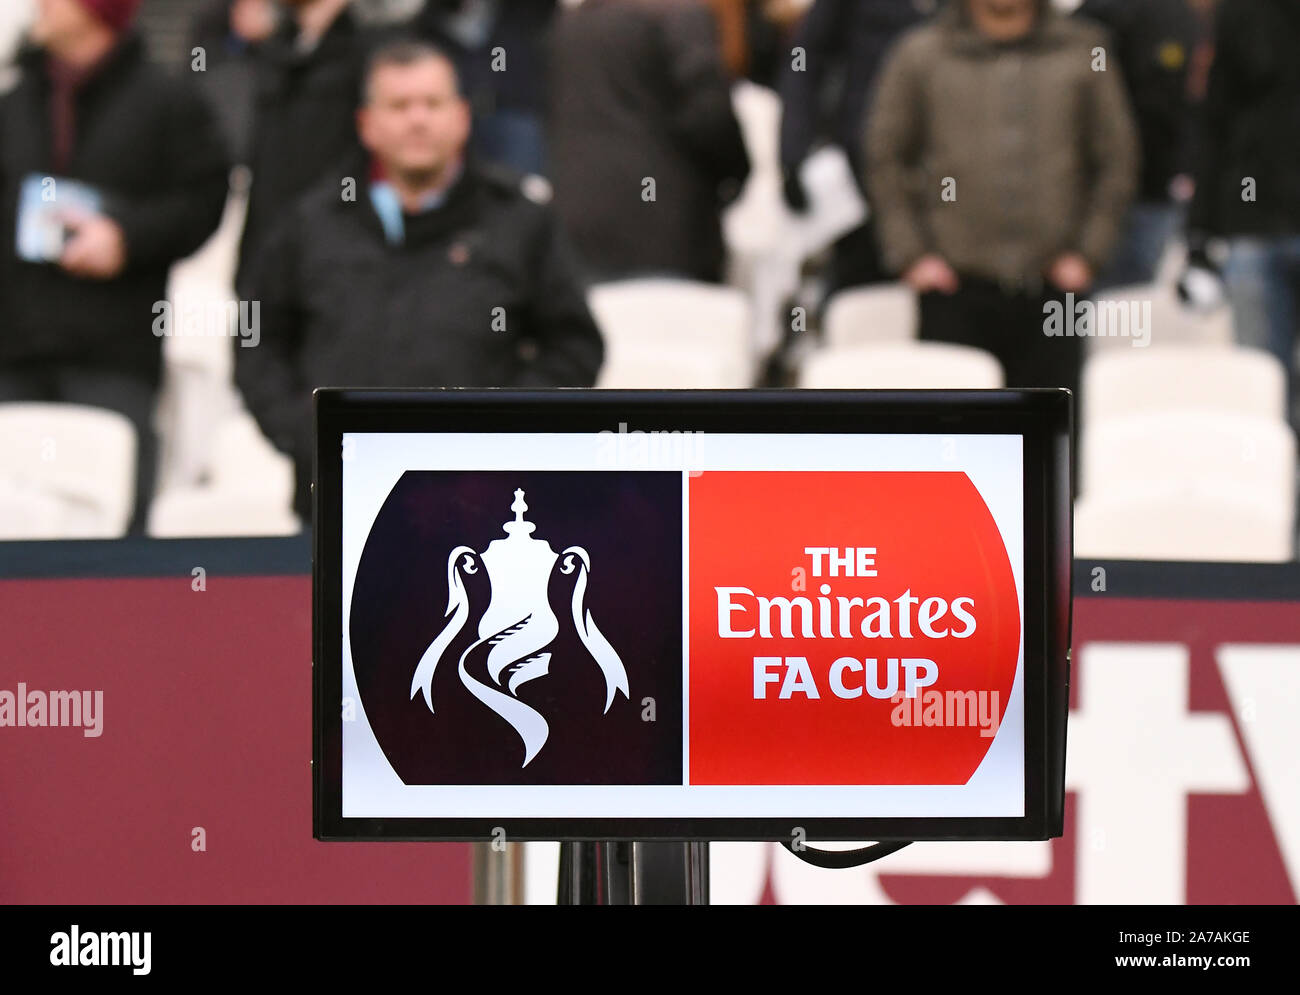 LONDON, ENGLAND - Januar 5, 2019: Die Emirate FA Cup Logo dargestellt vor dem FA Cup 2018/19 Runde 3 Spiel zwischen West Ham United und Birmingham City FC in London Stadion. Stockfoto